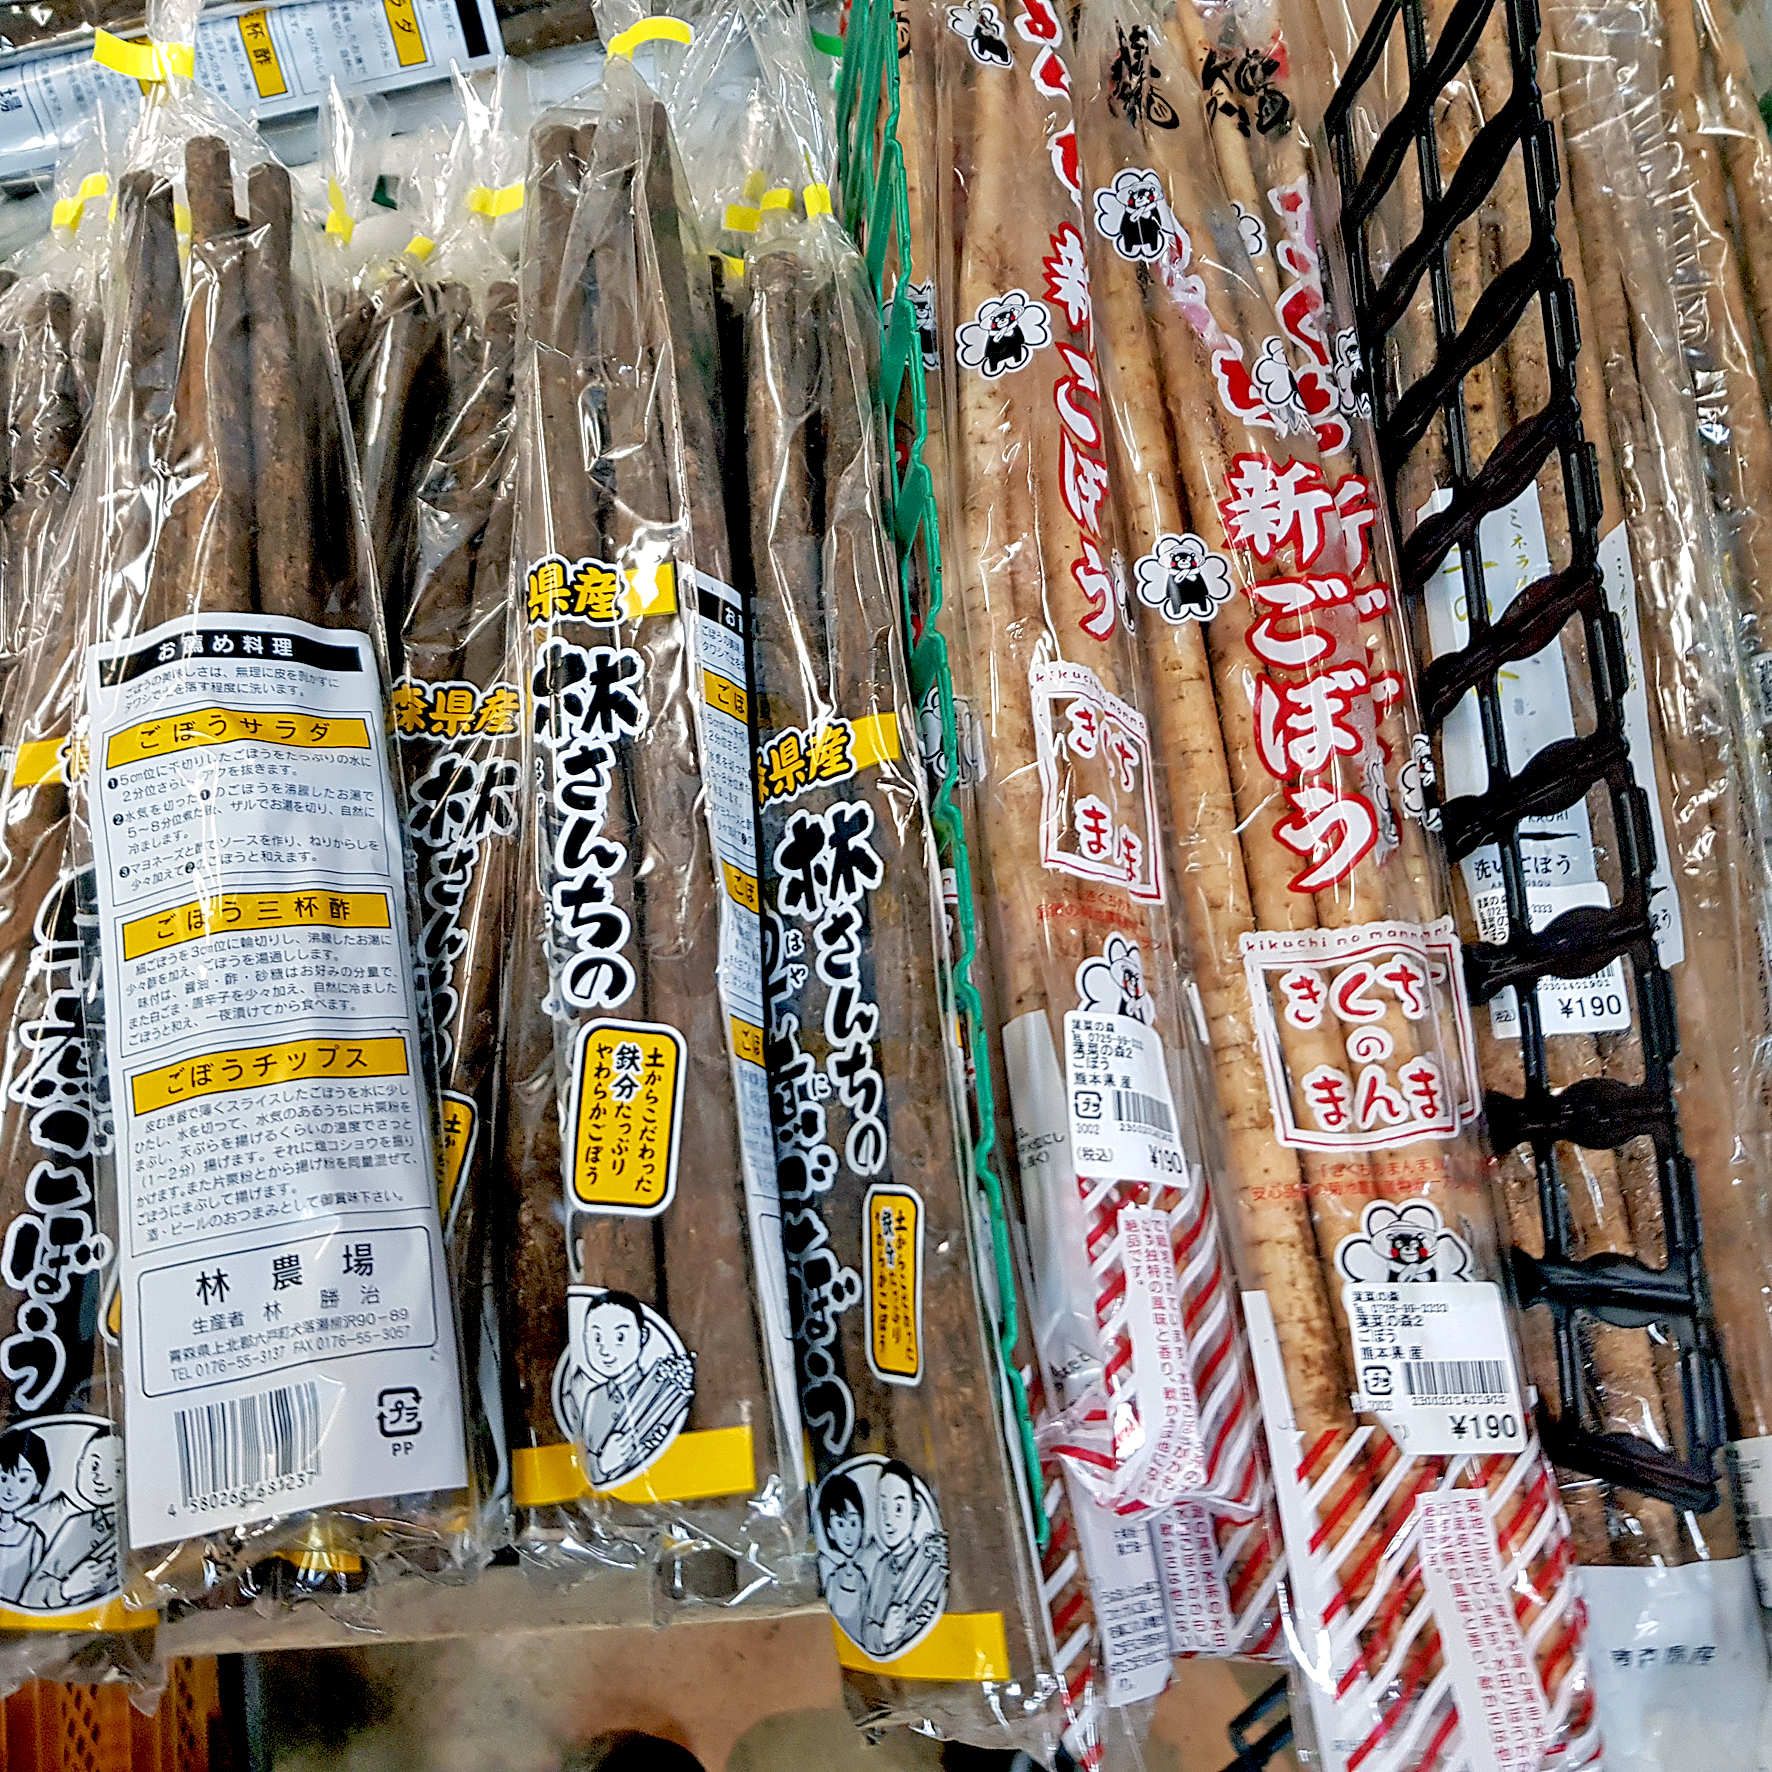 Gobo-Sortiment in einem japanischen Supermarkt